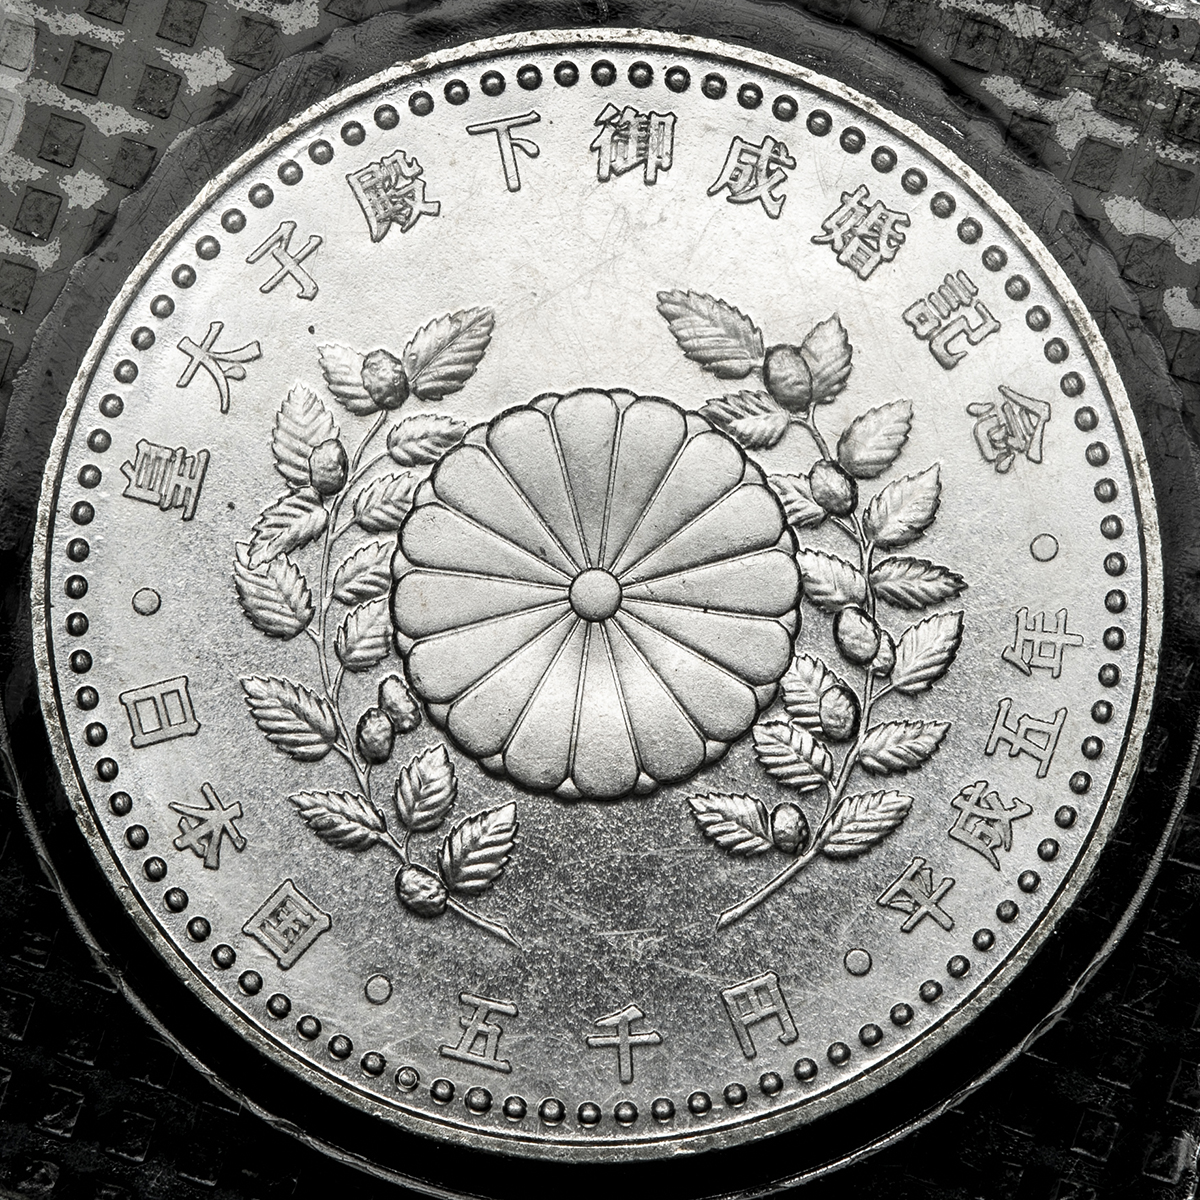 日本製 皇太子殿下御成婚記念50,000円金貨 - 旧貨幣/金貨/銀貨/記念硬貨